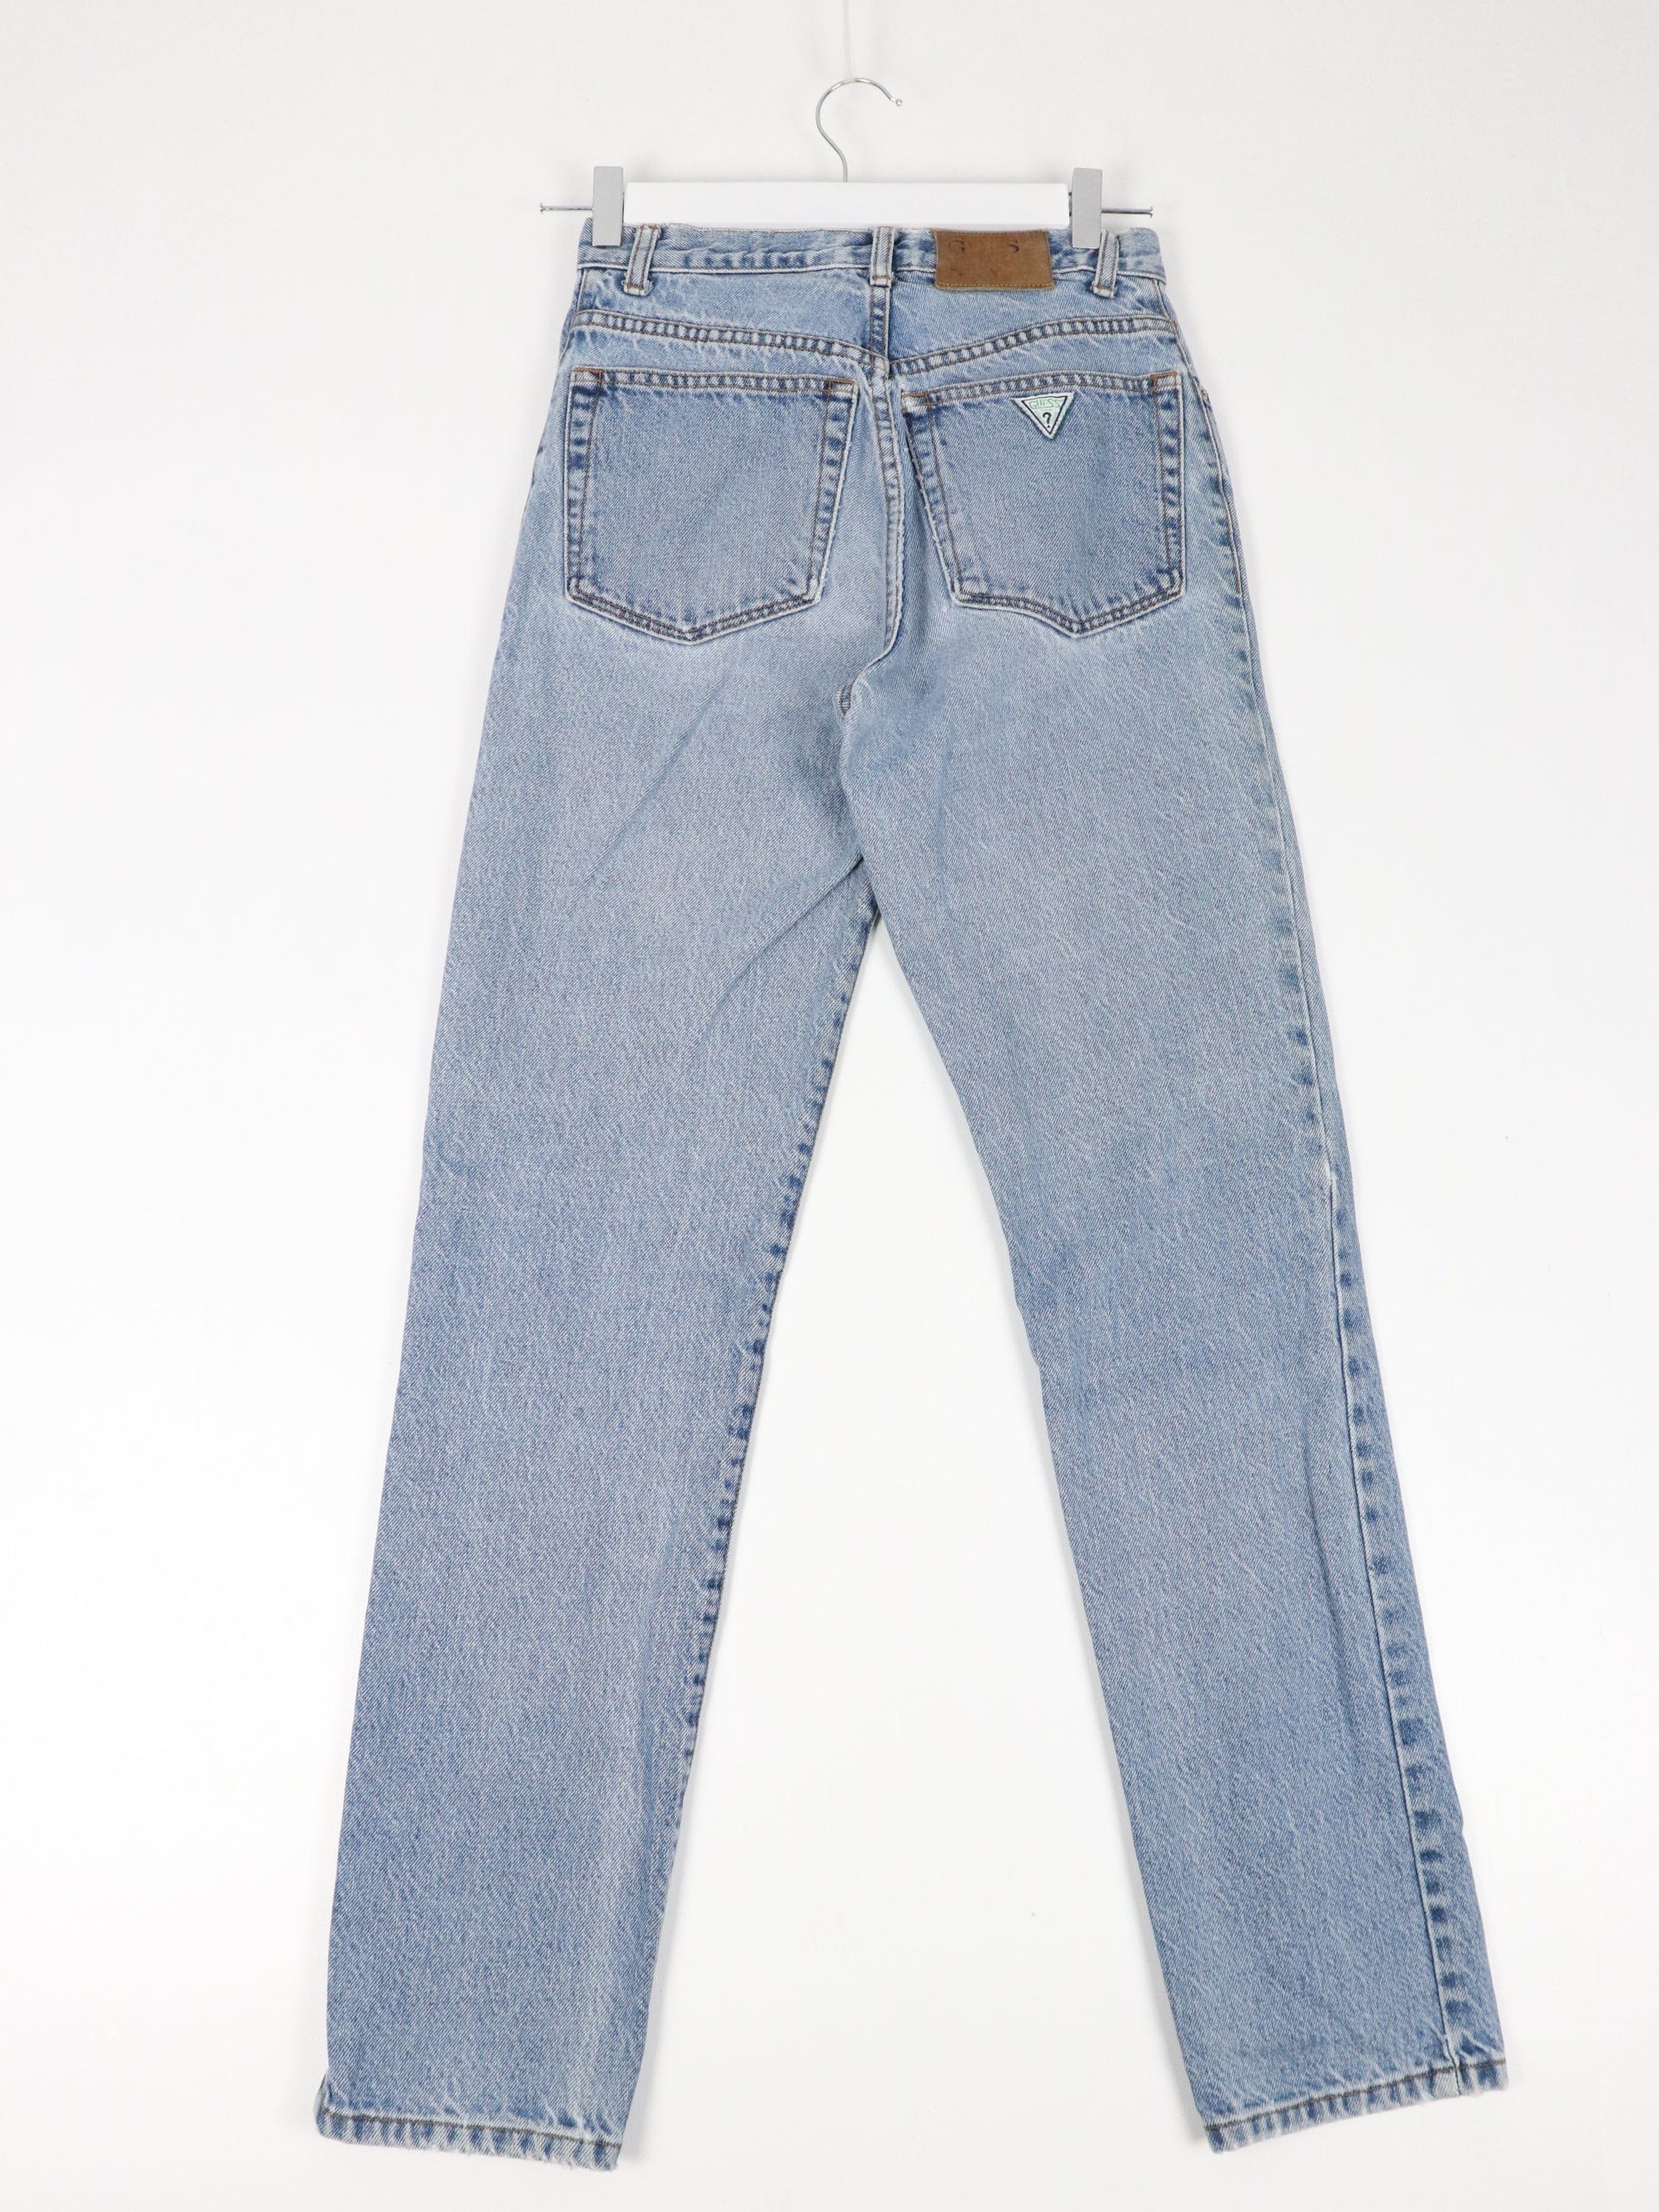 Vintage Guess Pants Fits Mens 27 x 32 Blue Denim Jeans 90s